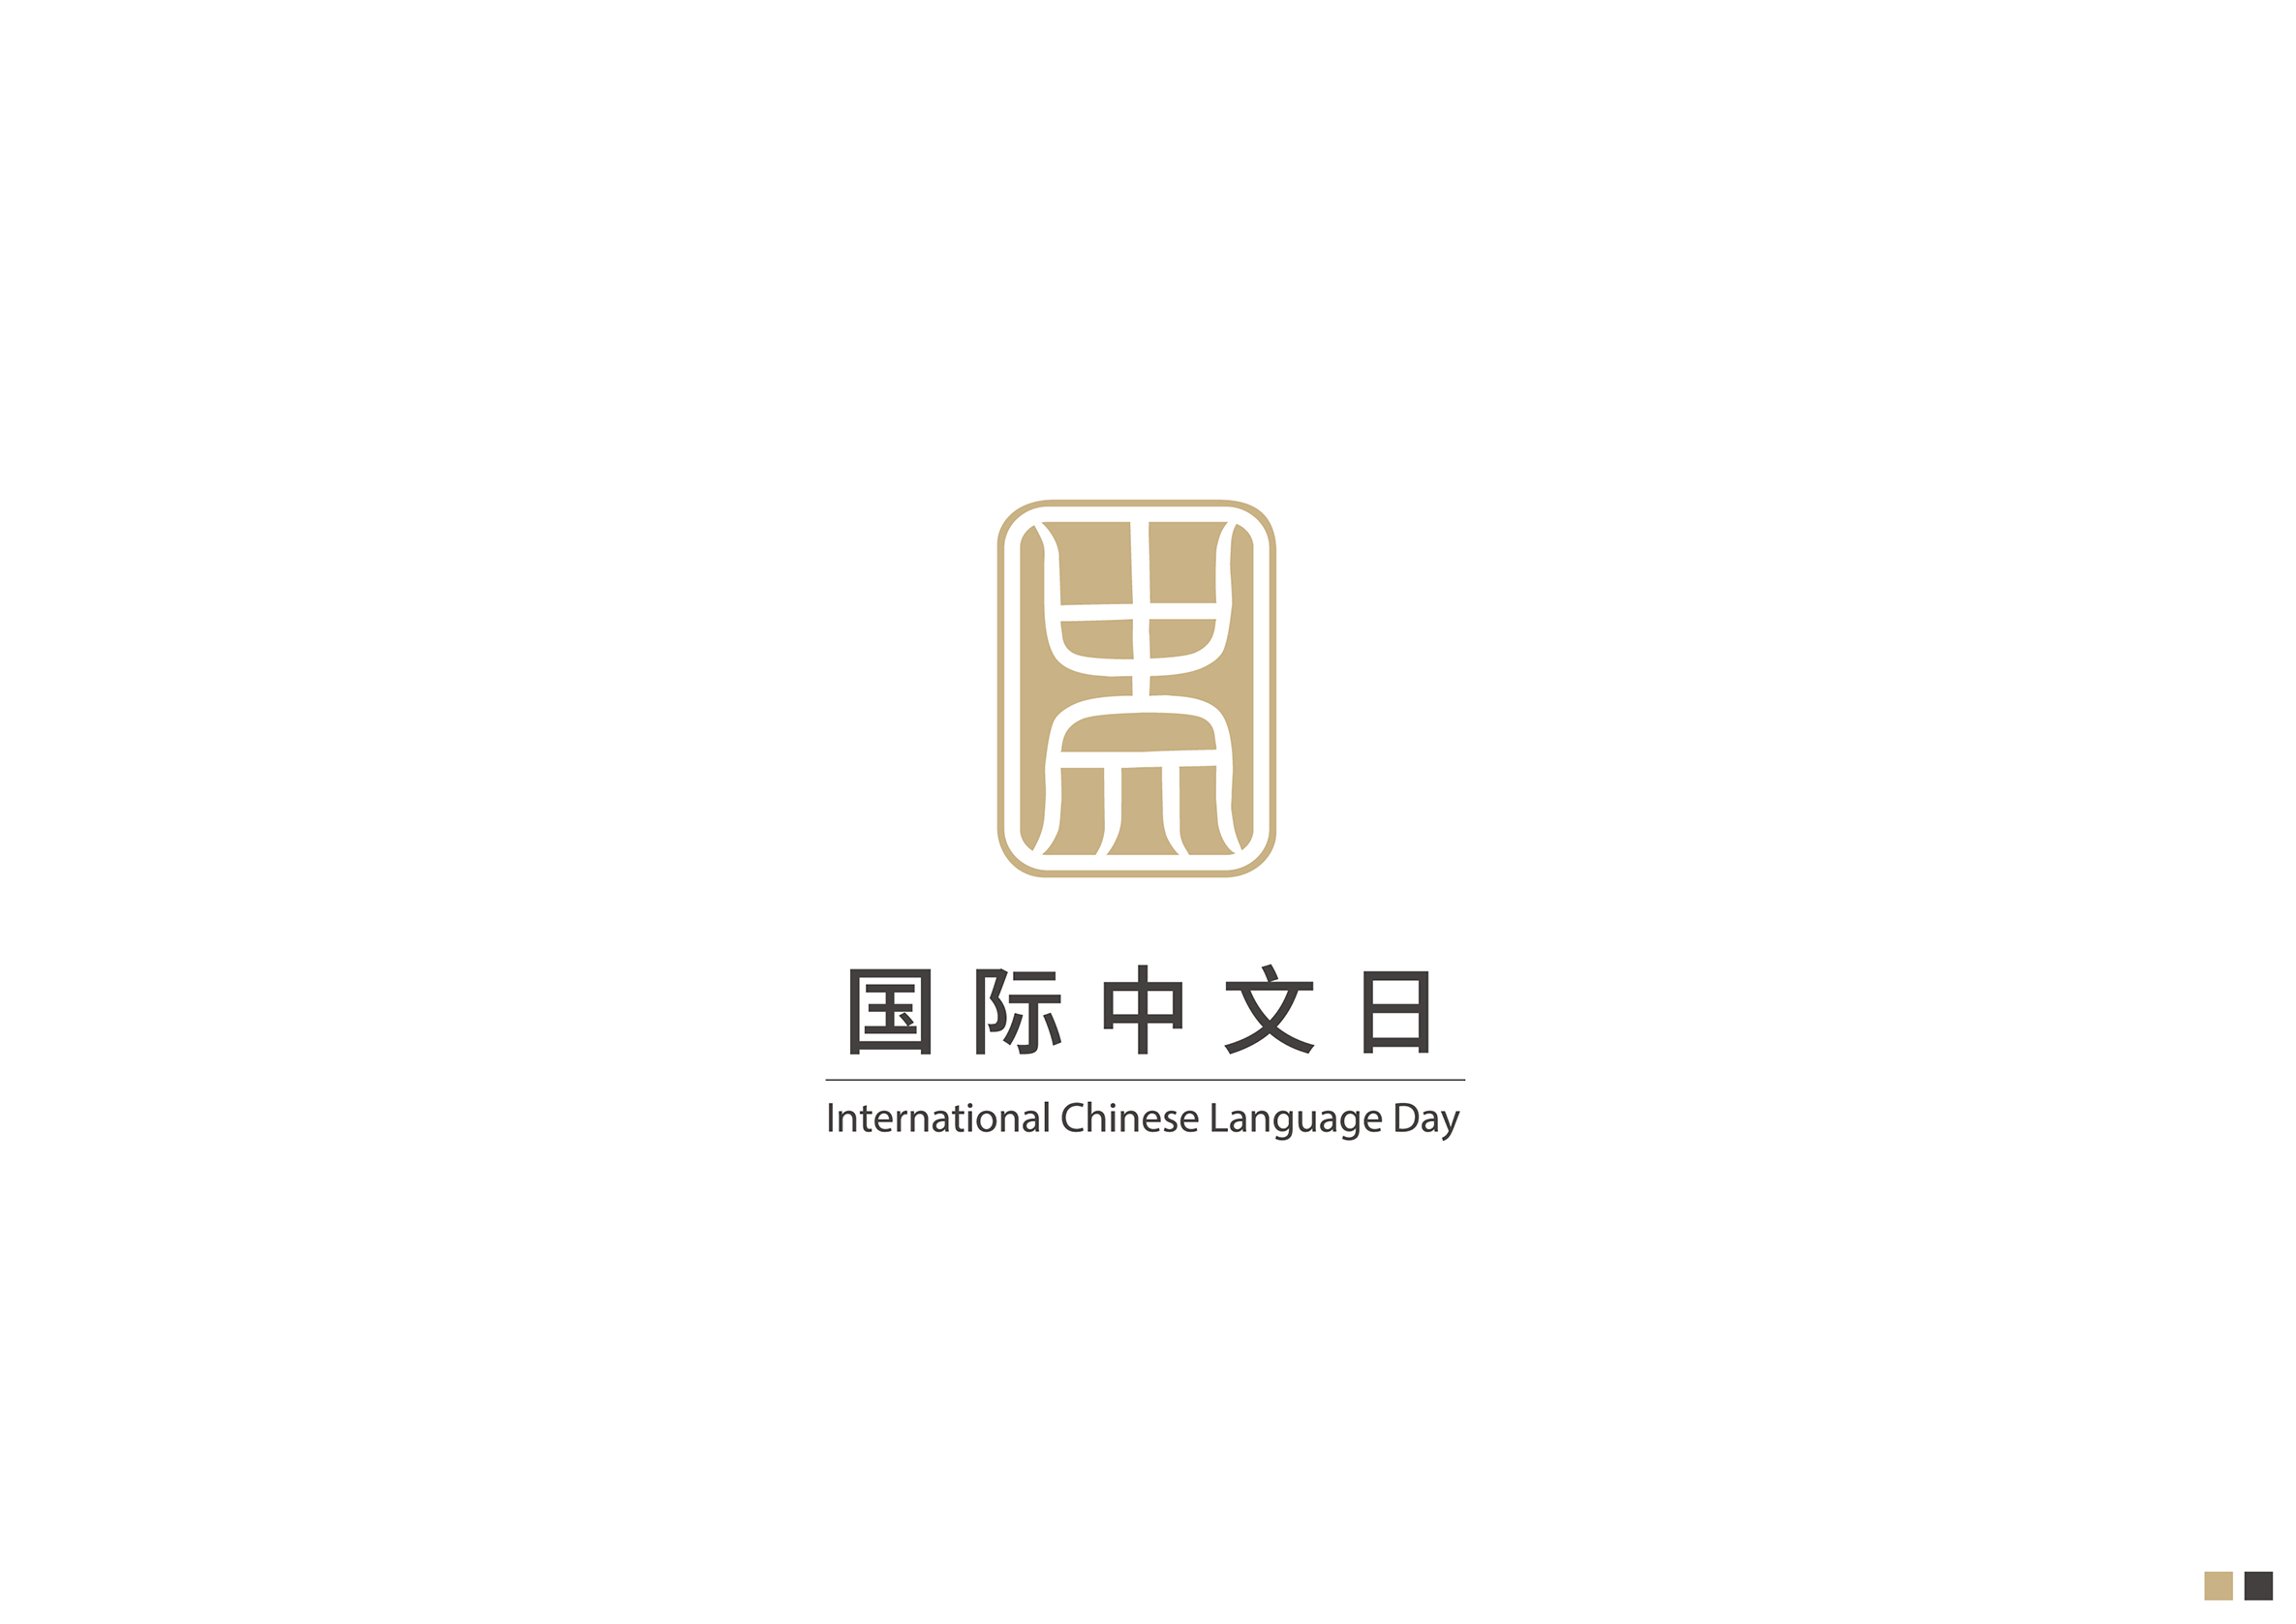 国际中文日标徽方案